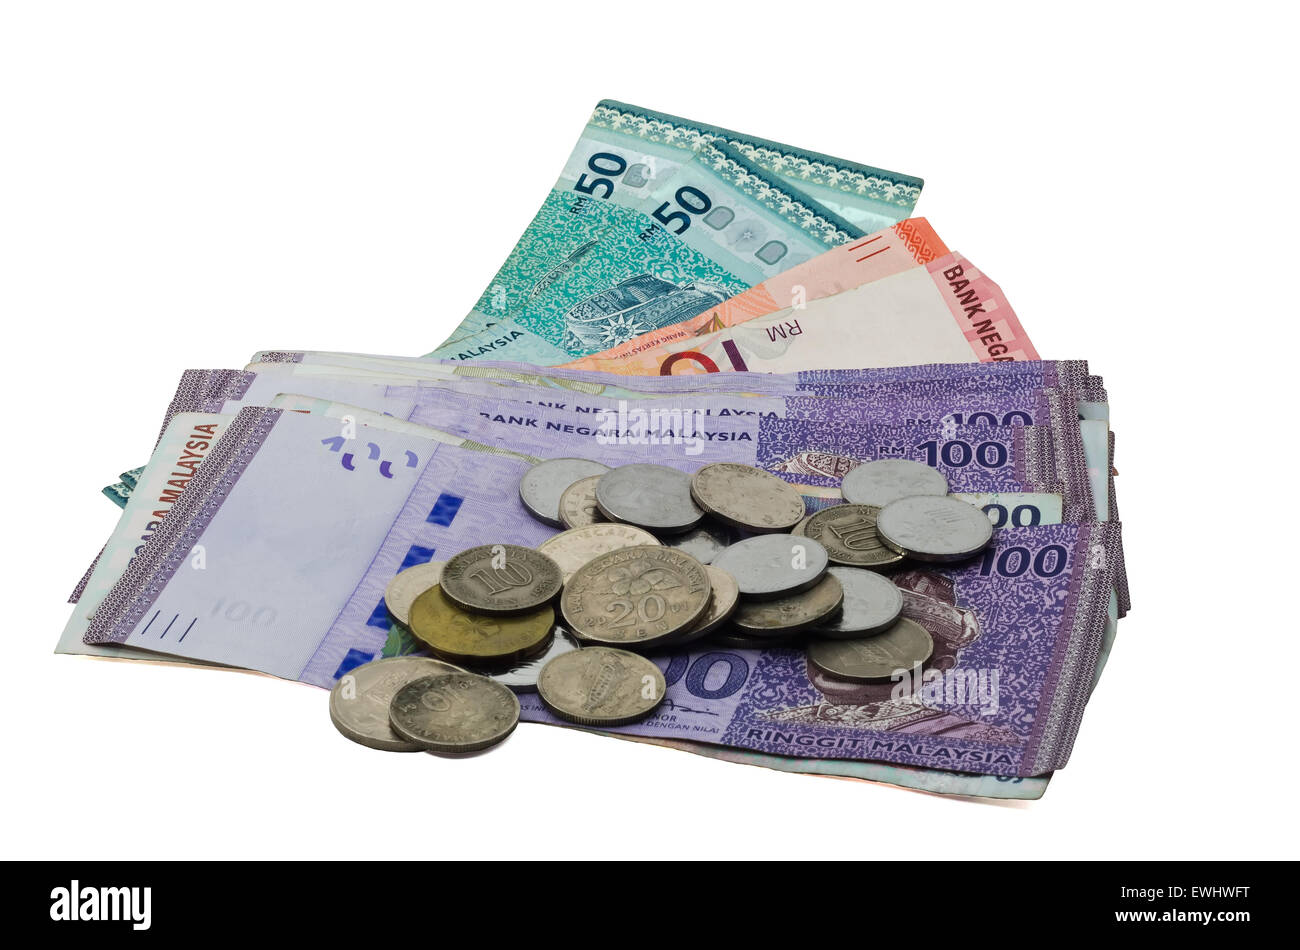 Malaysia Währung und Münzen auf dem weißen Hintergrund Stockfoto